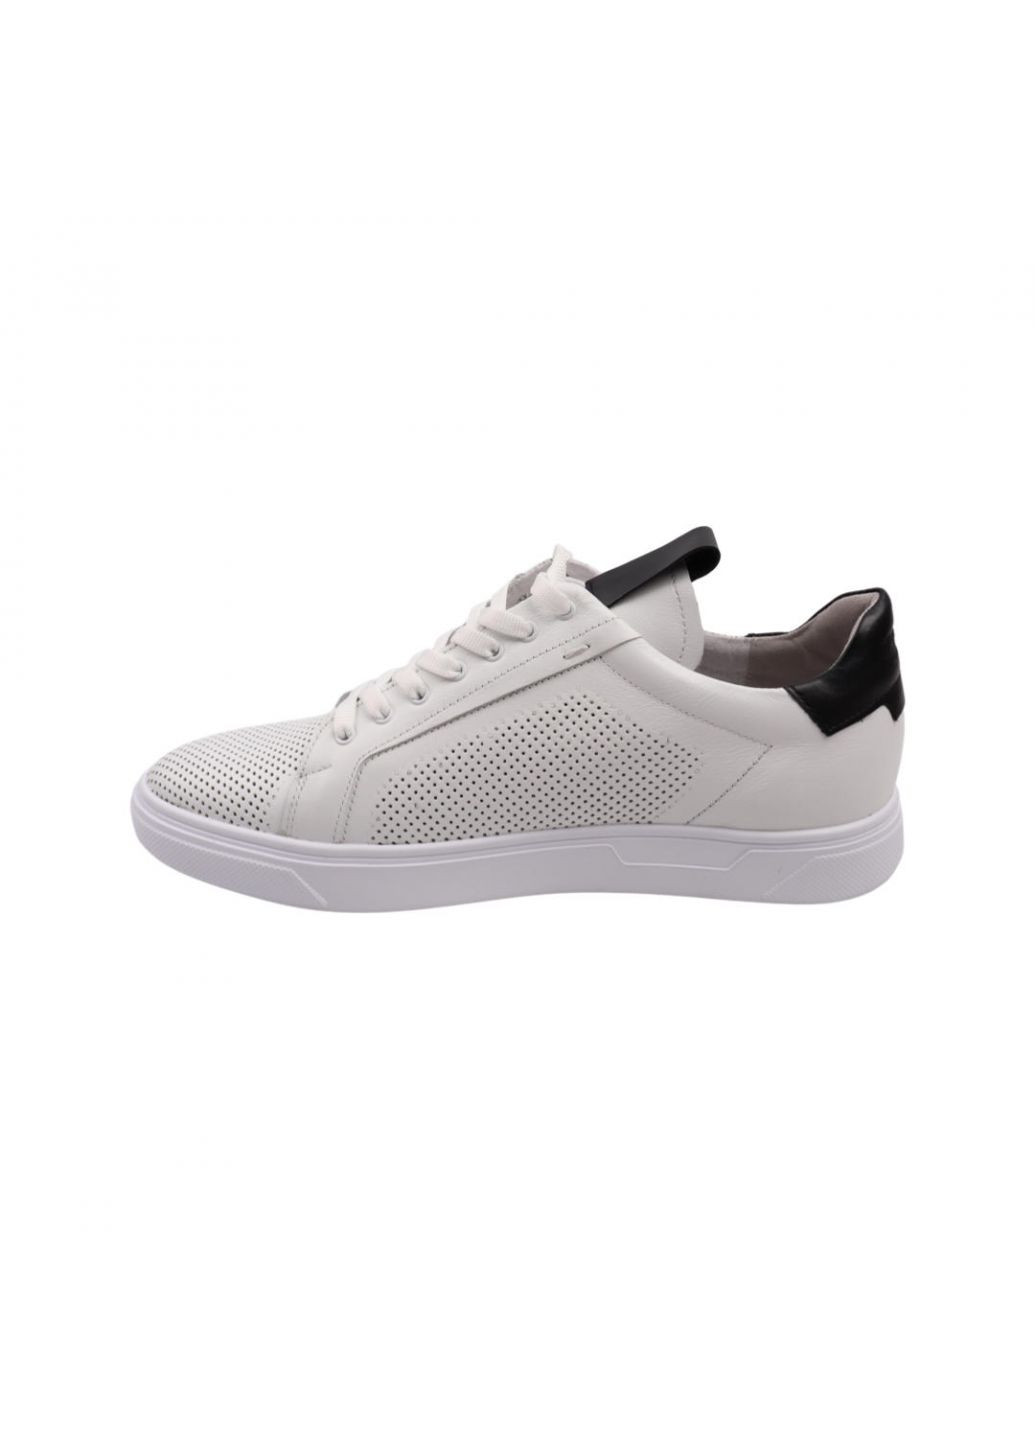 Білі кеди чоловічі білі натуральна шкіра Maxus Shoes 98-22LTCP